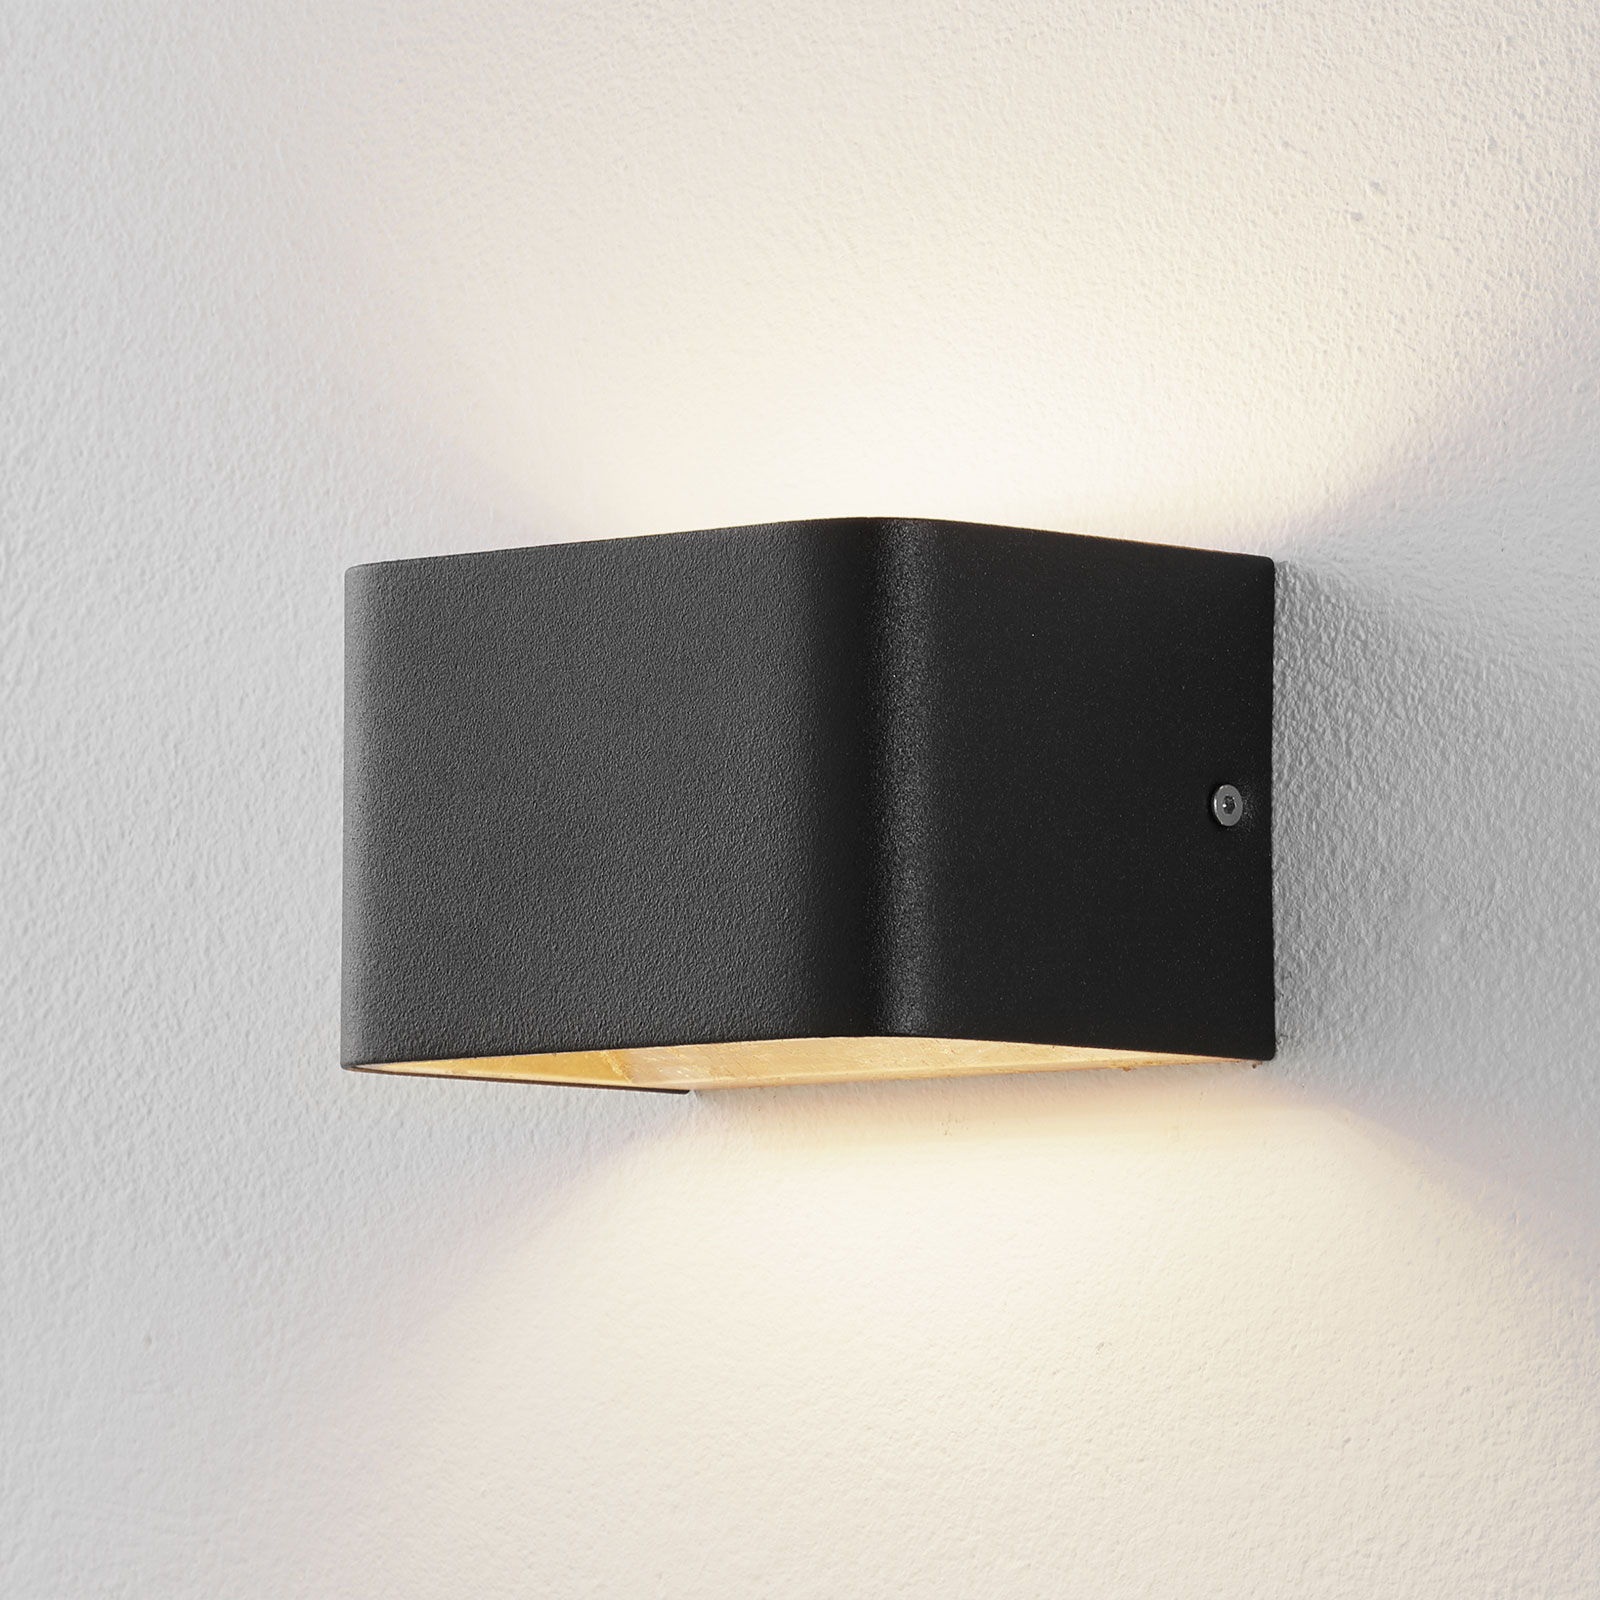 Lucande Sessa LED wall light 13 cm black and gold